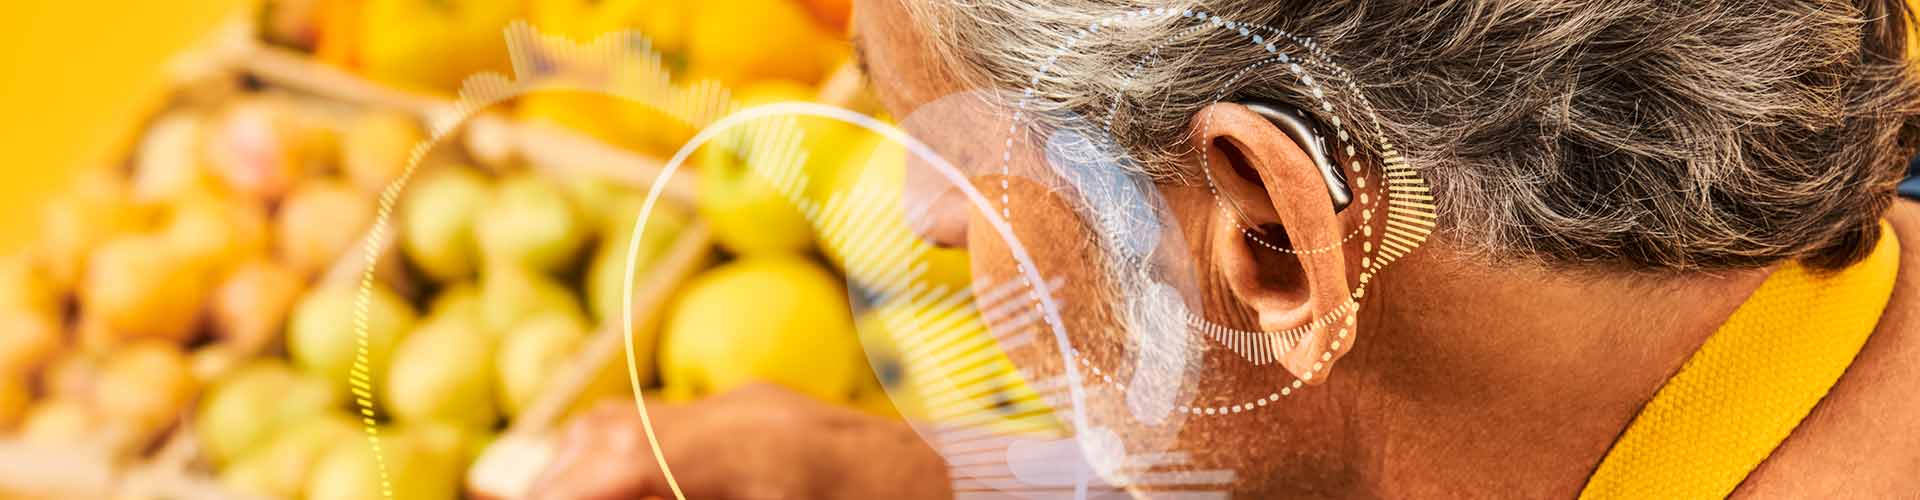 Un homme porte des aides auditives rechargeables Philips HearLink miniRITE T R tout en rangeant des oranges sur son stand du marché agricole durable